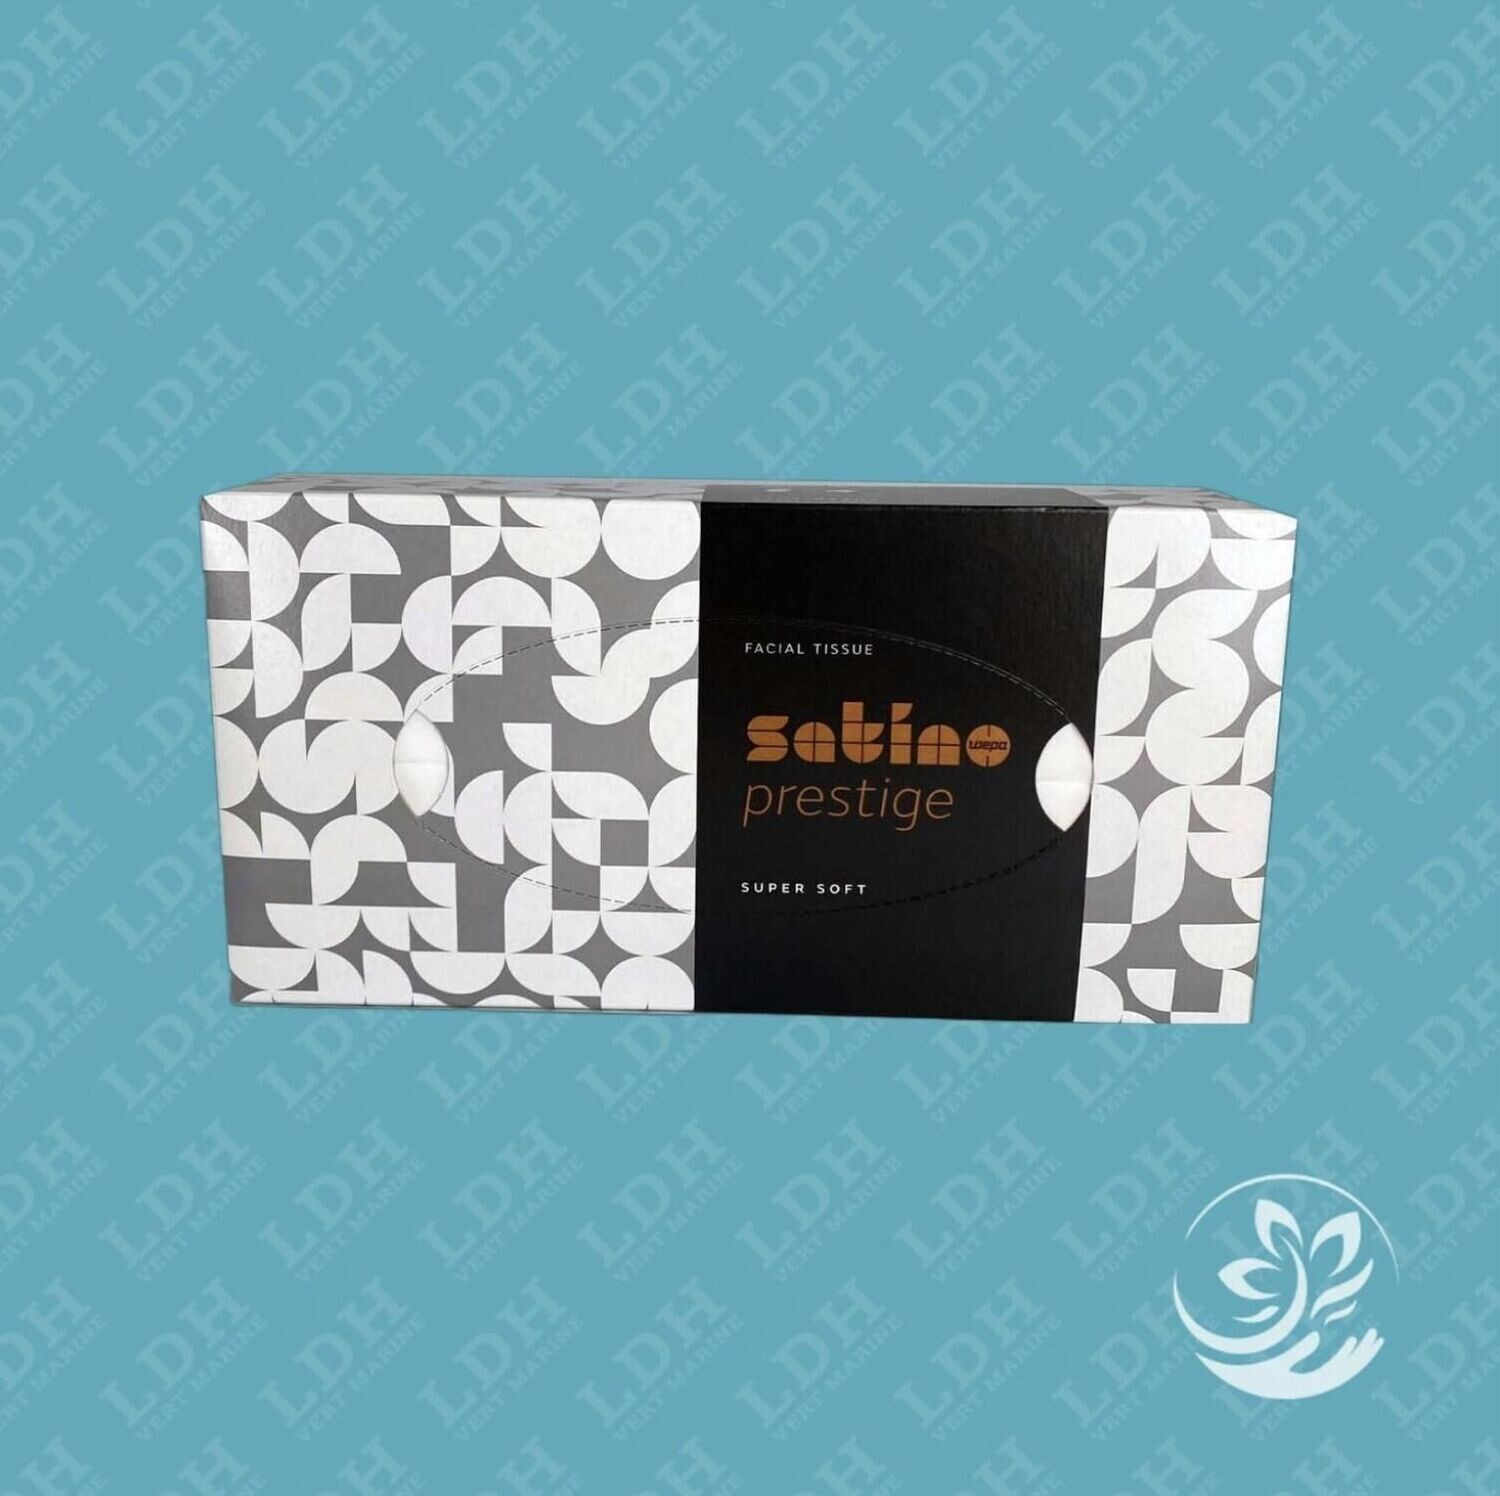 Mouchoirs cosmétiques Satino Prestige en boîte plate, Mouchoirs cosmétiques Satino Prestige en boîte plate: 1 boîte Mouchoir rectangulaire